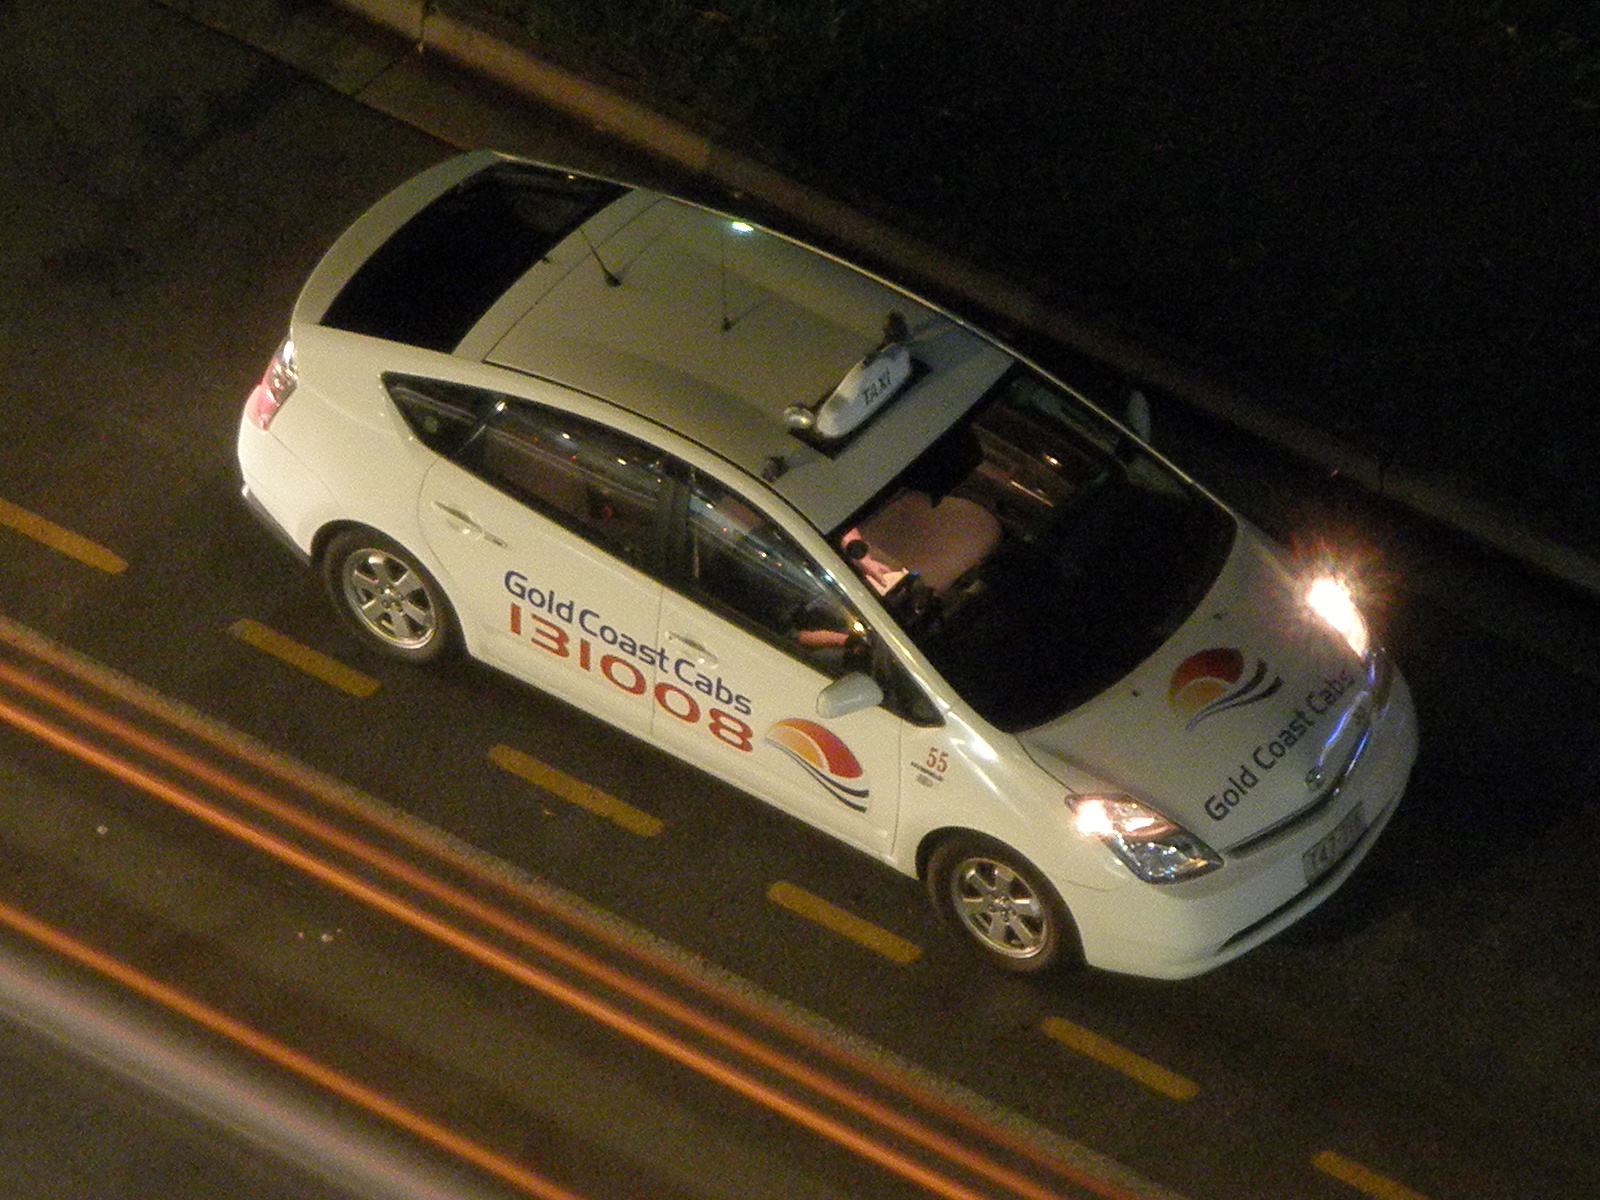 lommeregner software Afskrække File:Toyota Prius Taxi on Gold Coast, Australia.jpg - Wikimedia Commons